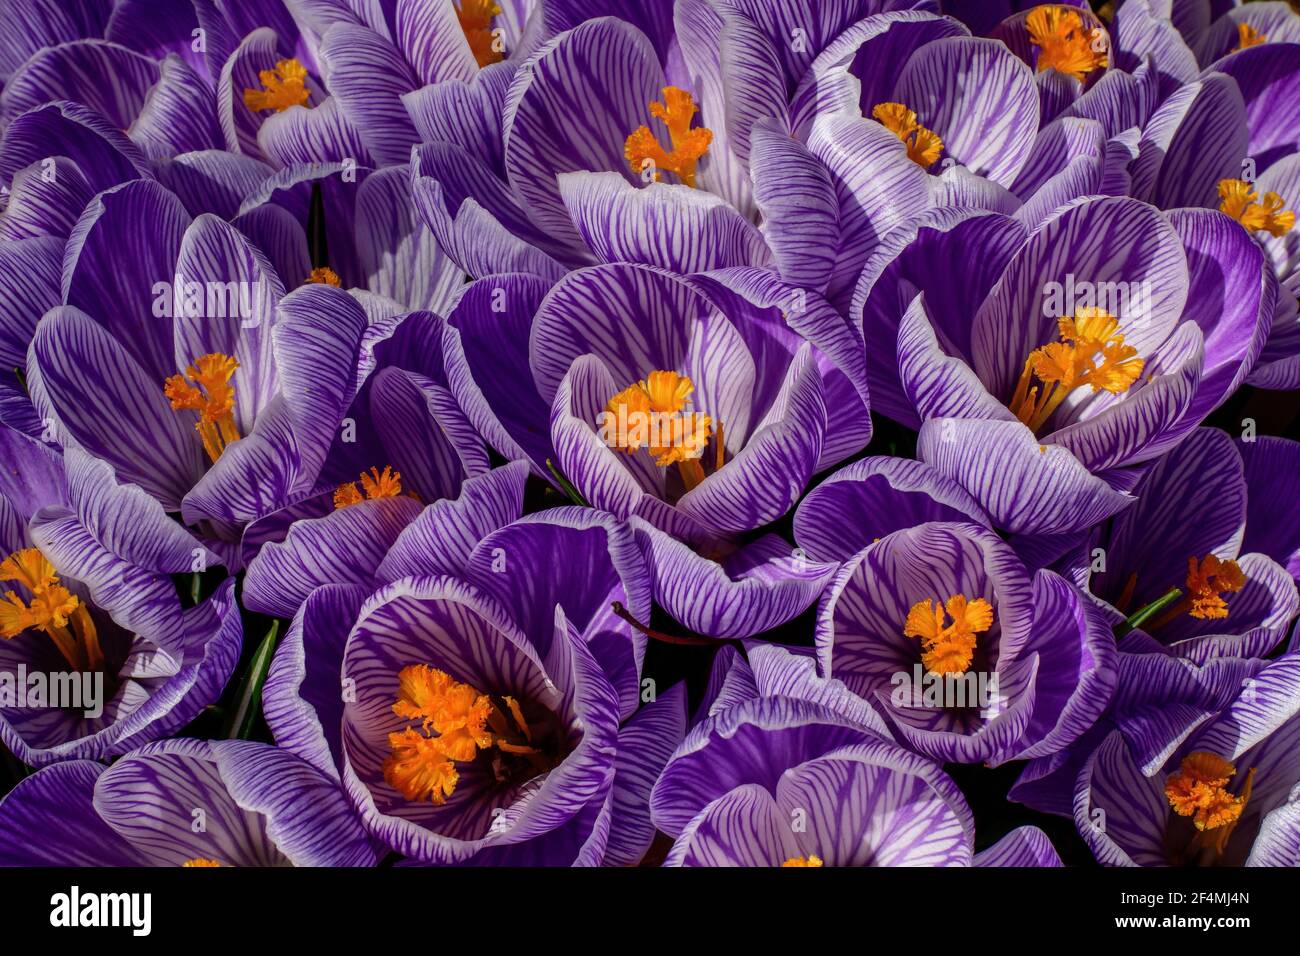 Primo fiore di croco di primavera. È un genere di piante da fiore della famiglia dell'iride con 90 specie di perennials che crescono dai corms. Foto Stock